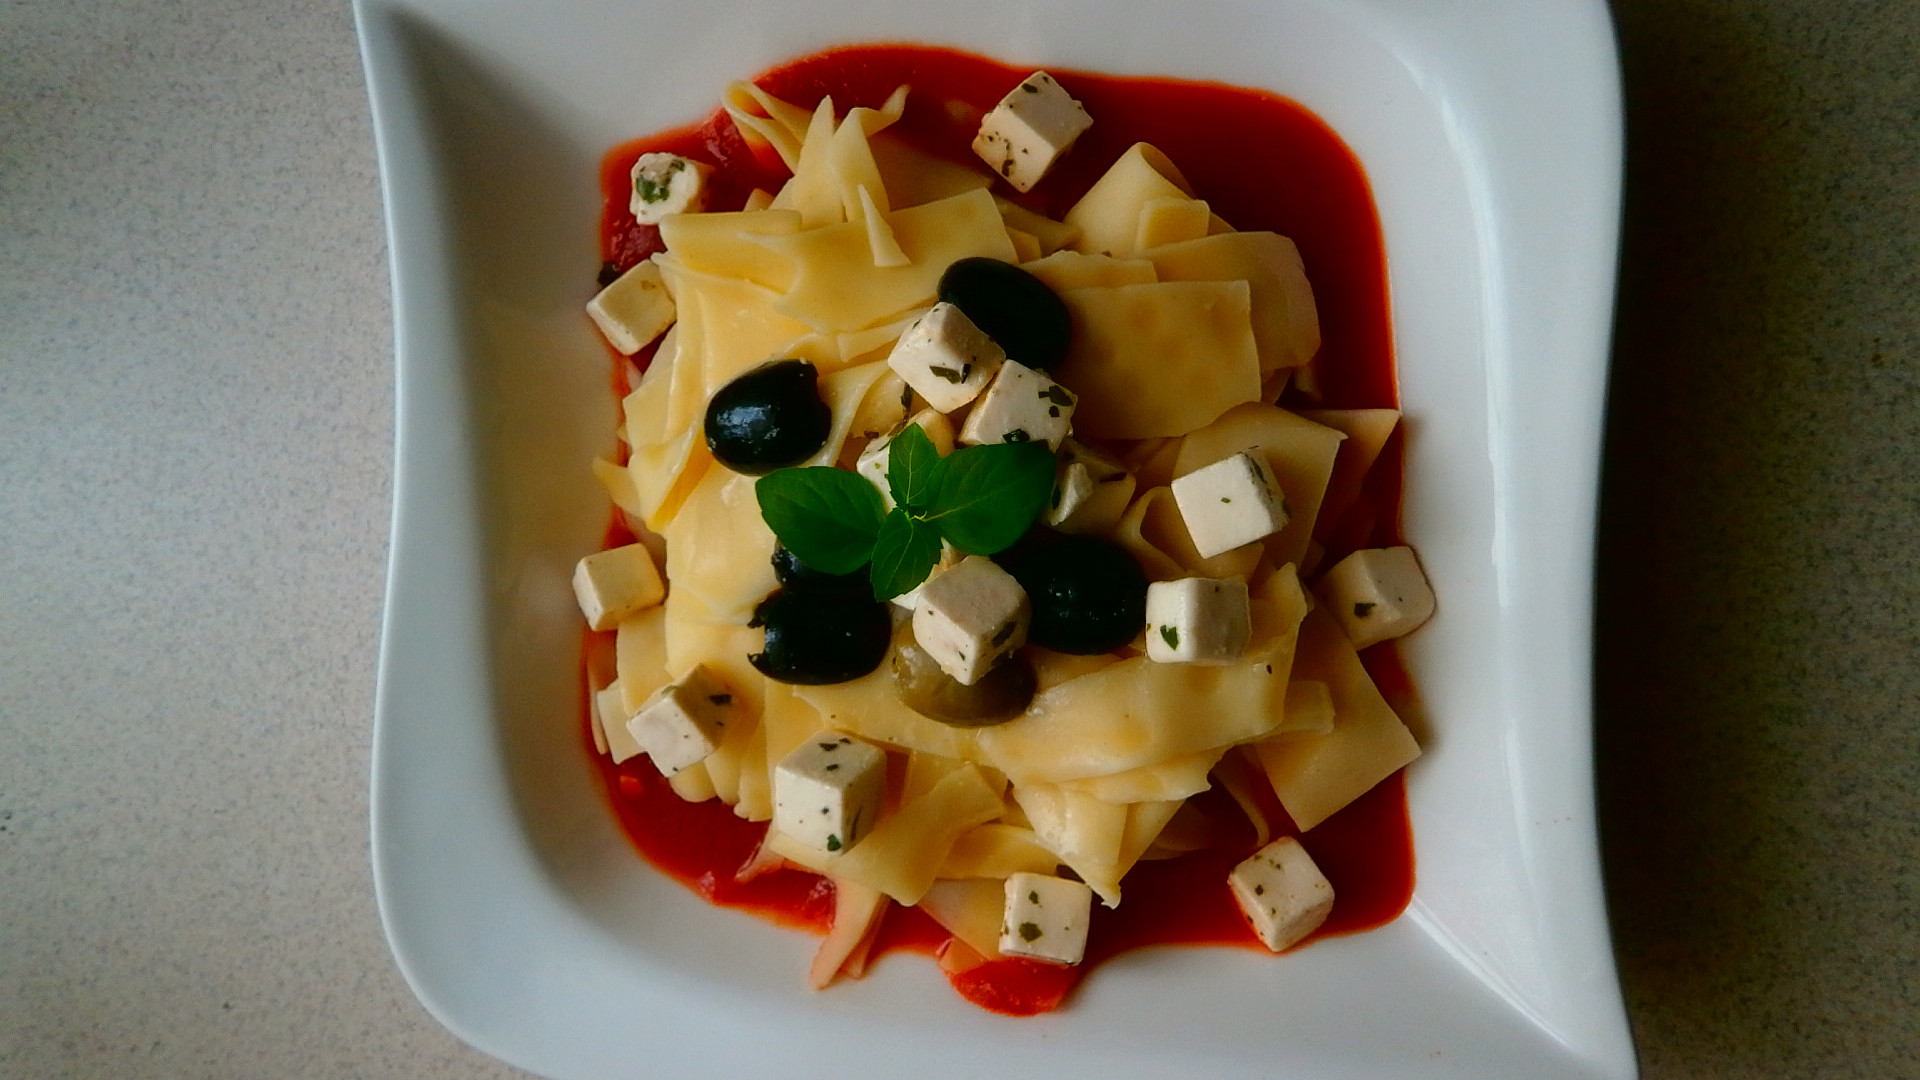 Těstoviny, rajčatová passata, kozí sýr a olivy